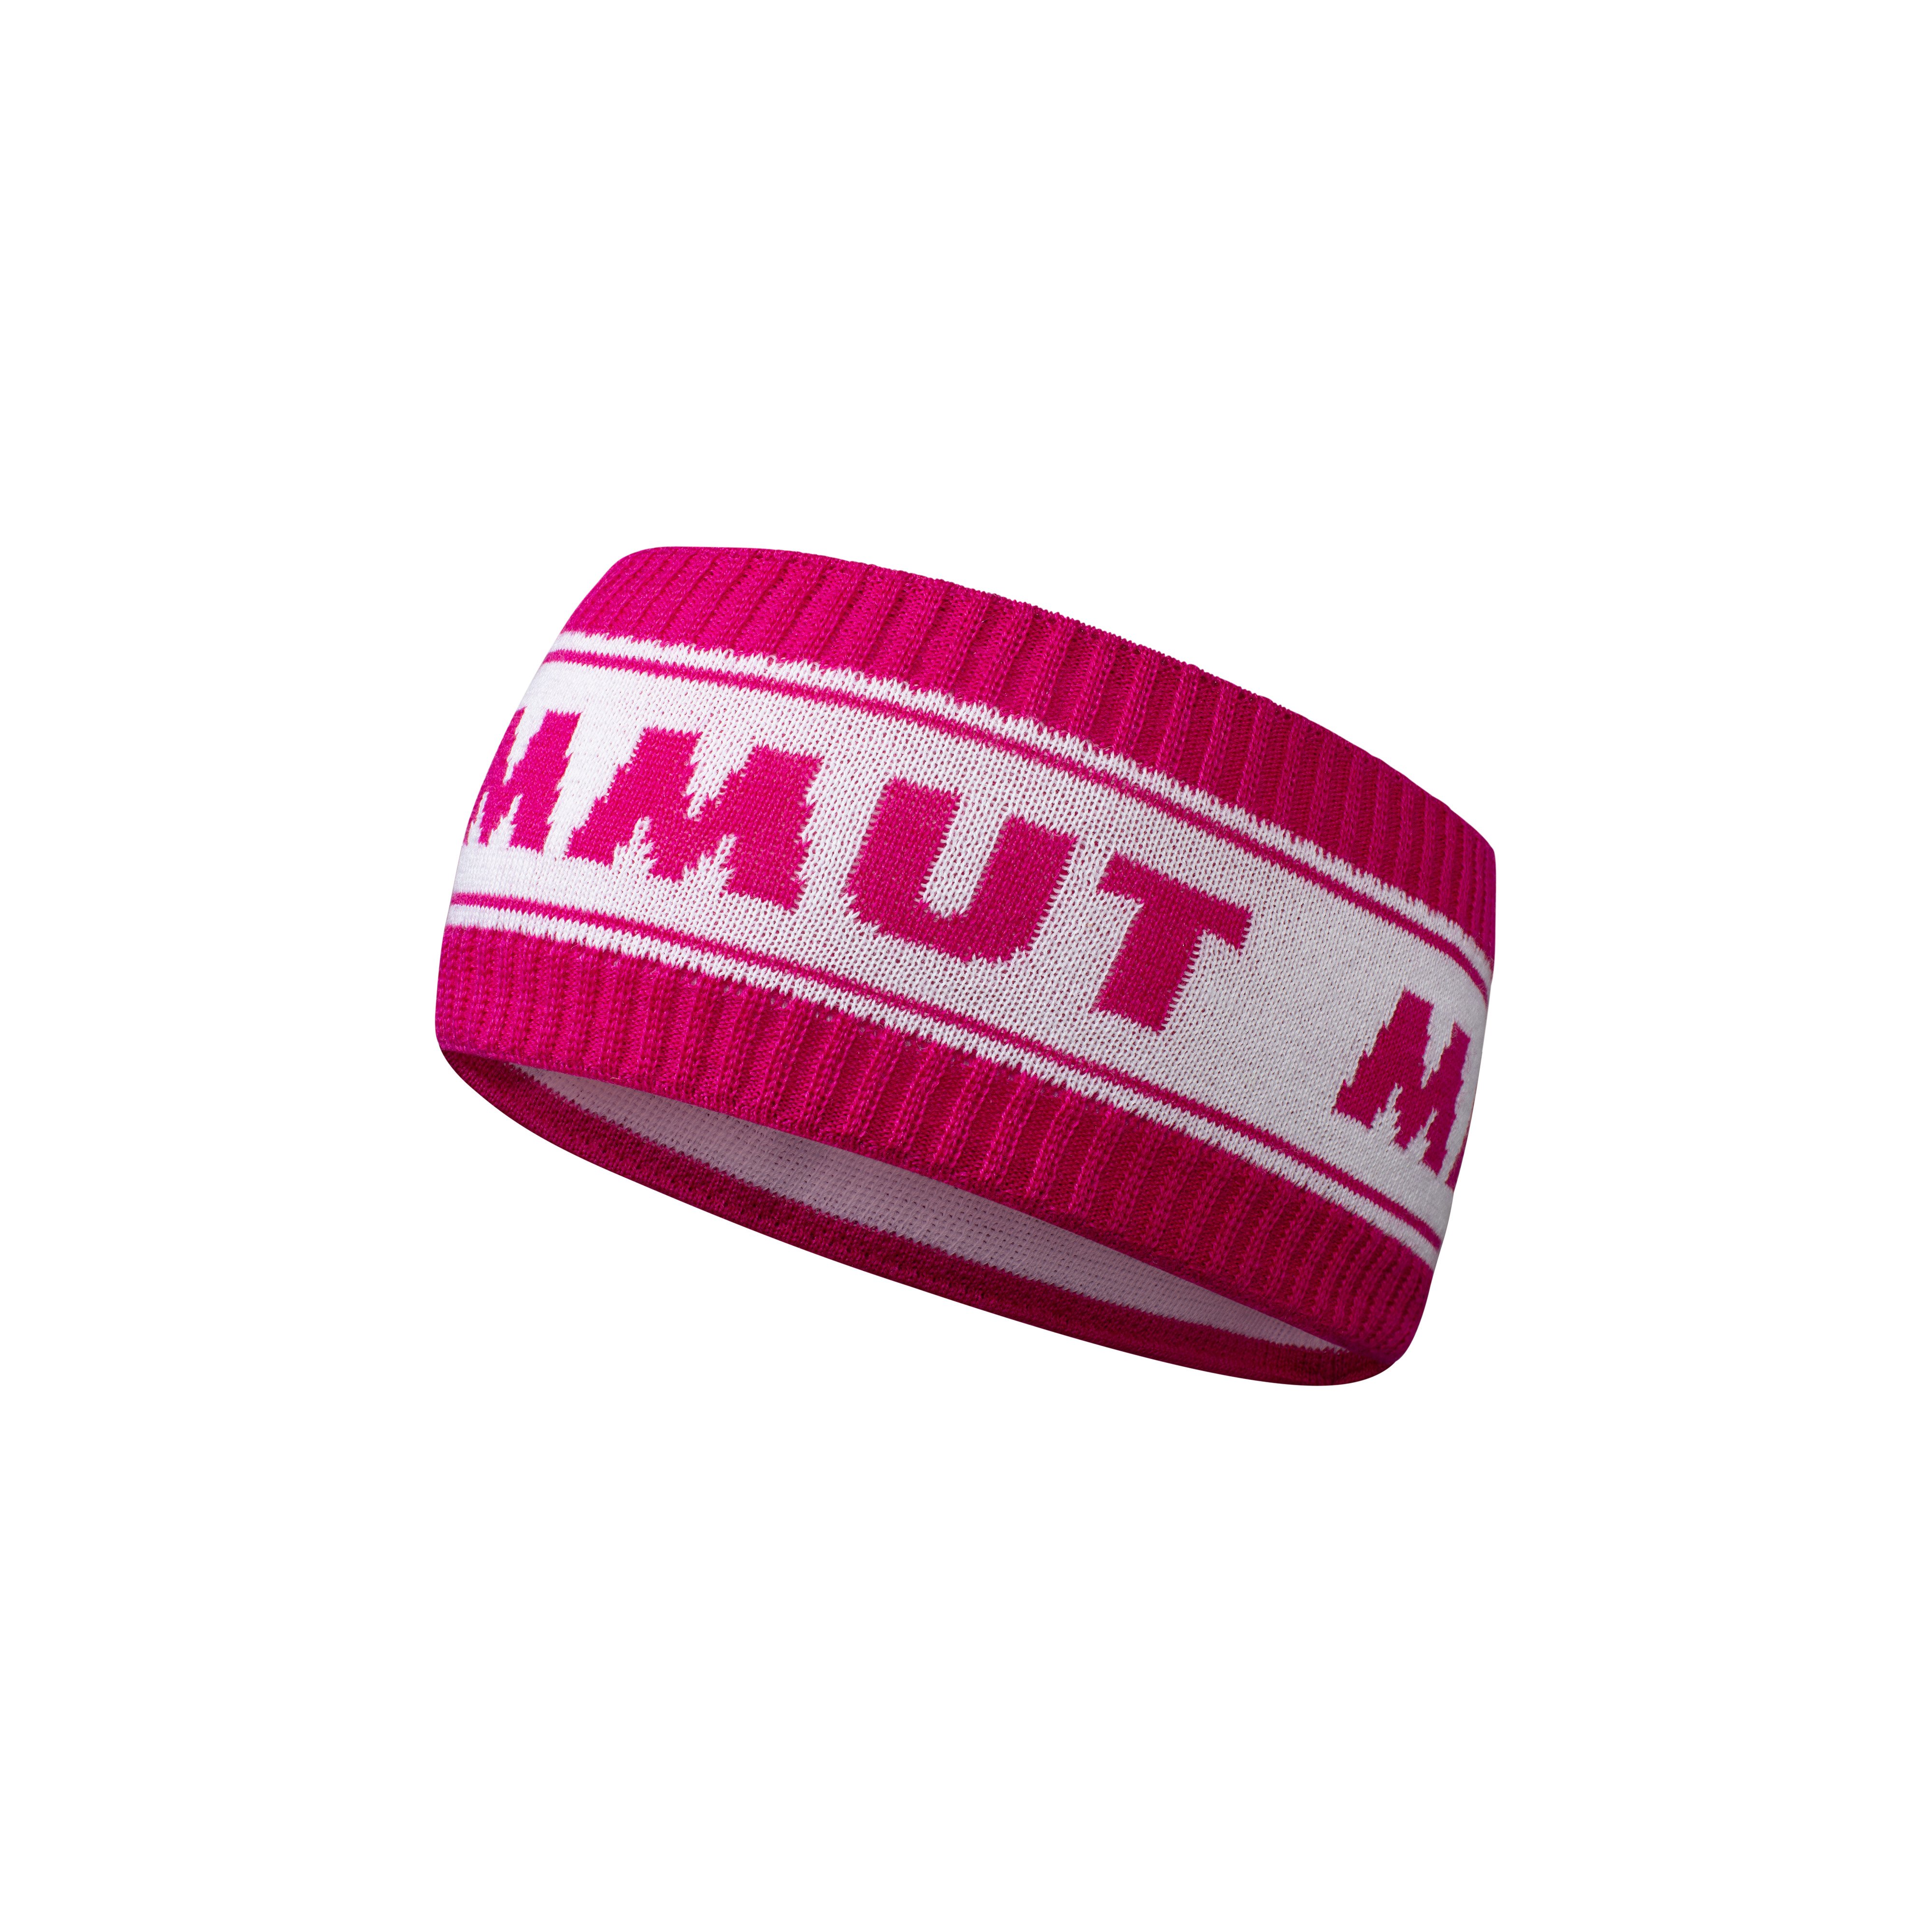 Peaks Headband - pink-white, one size product image